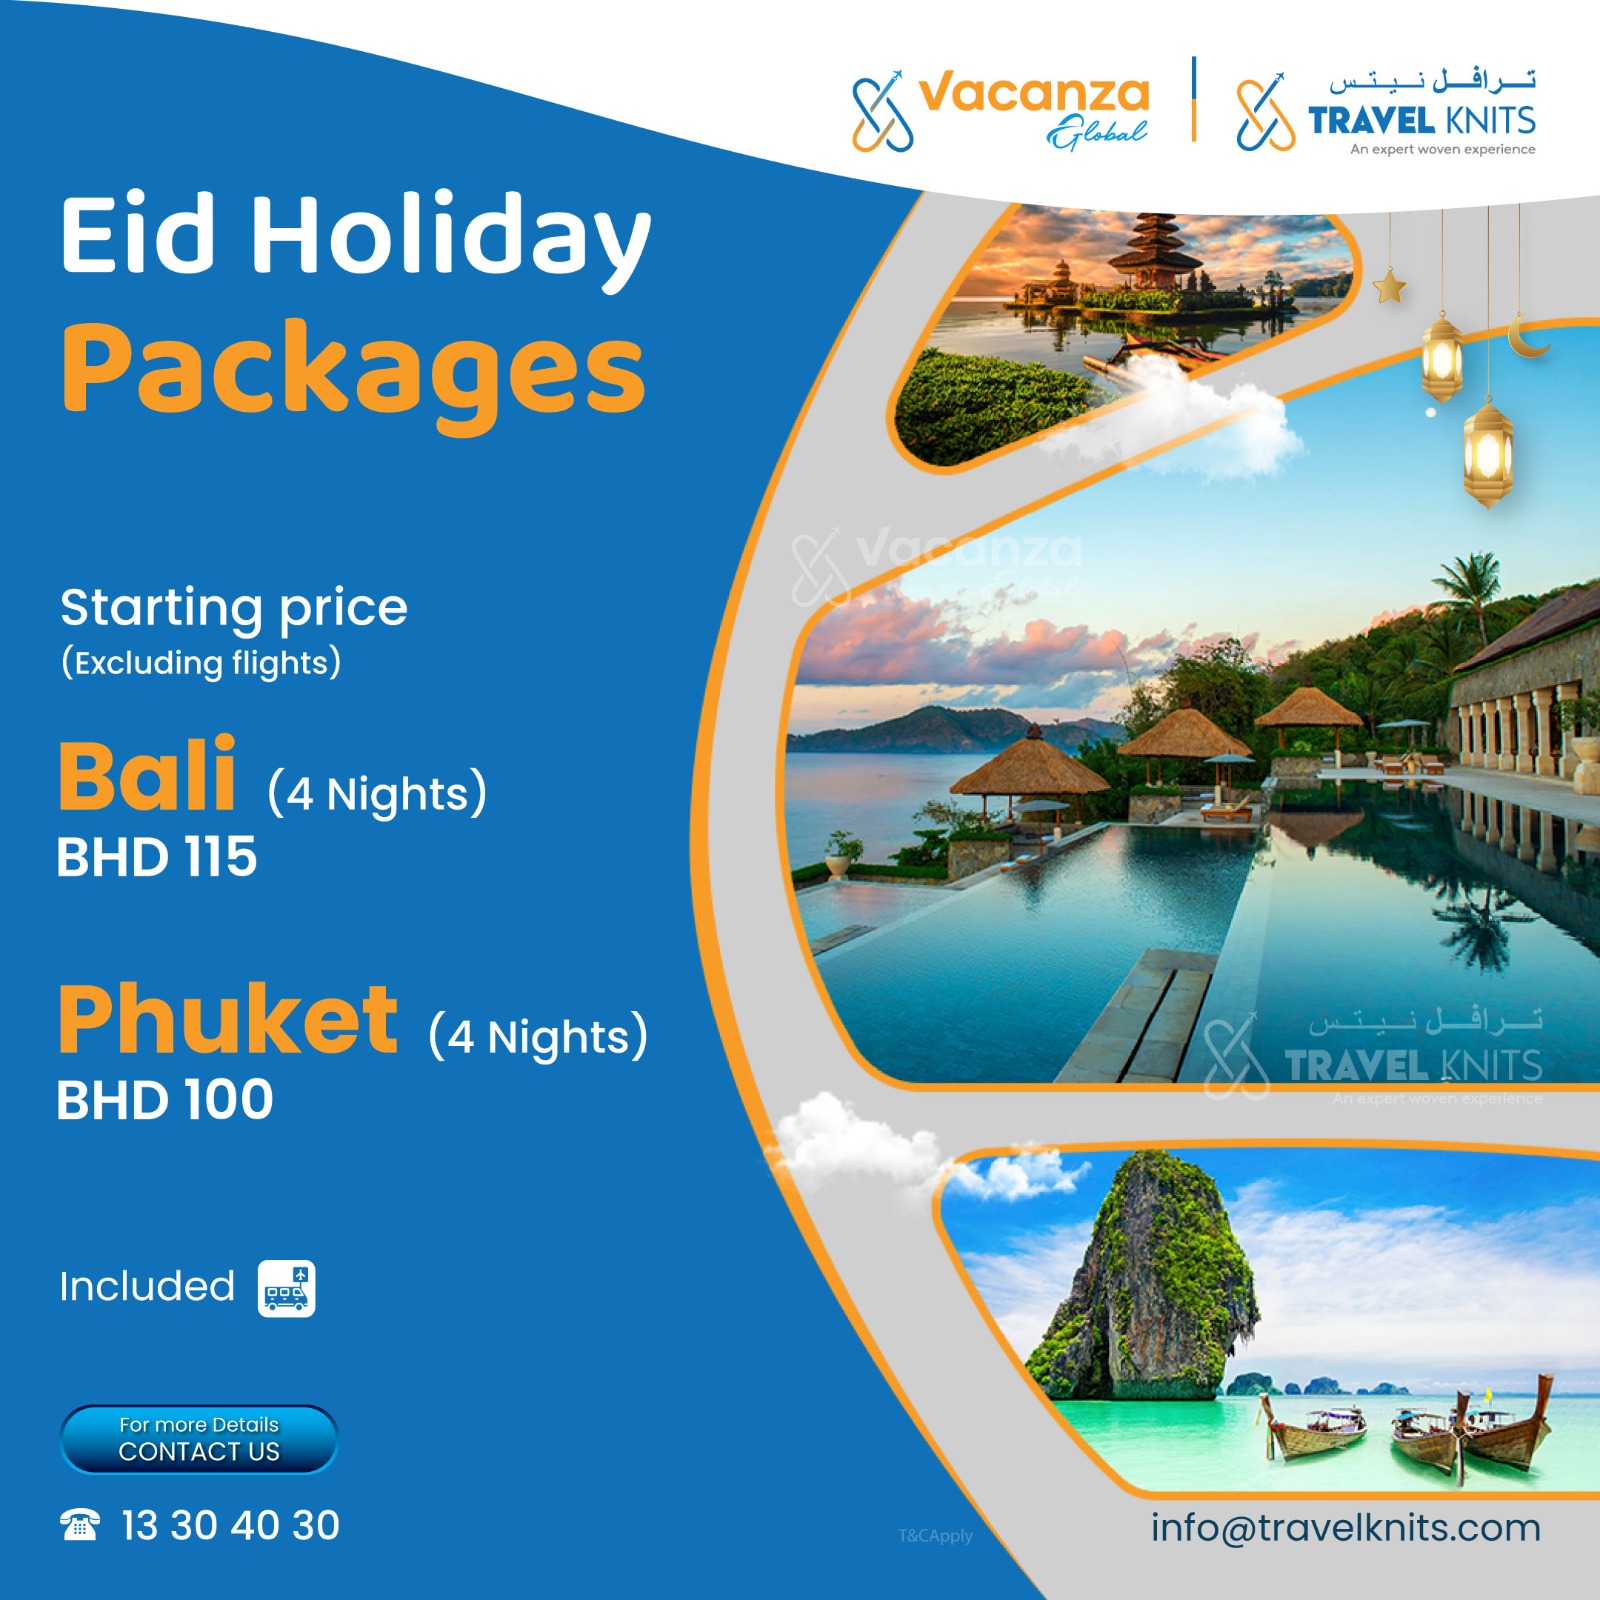 Eid package Tour Packages - Book honeymoon ,family,adventure tour packages to Eid package |Travel Knits